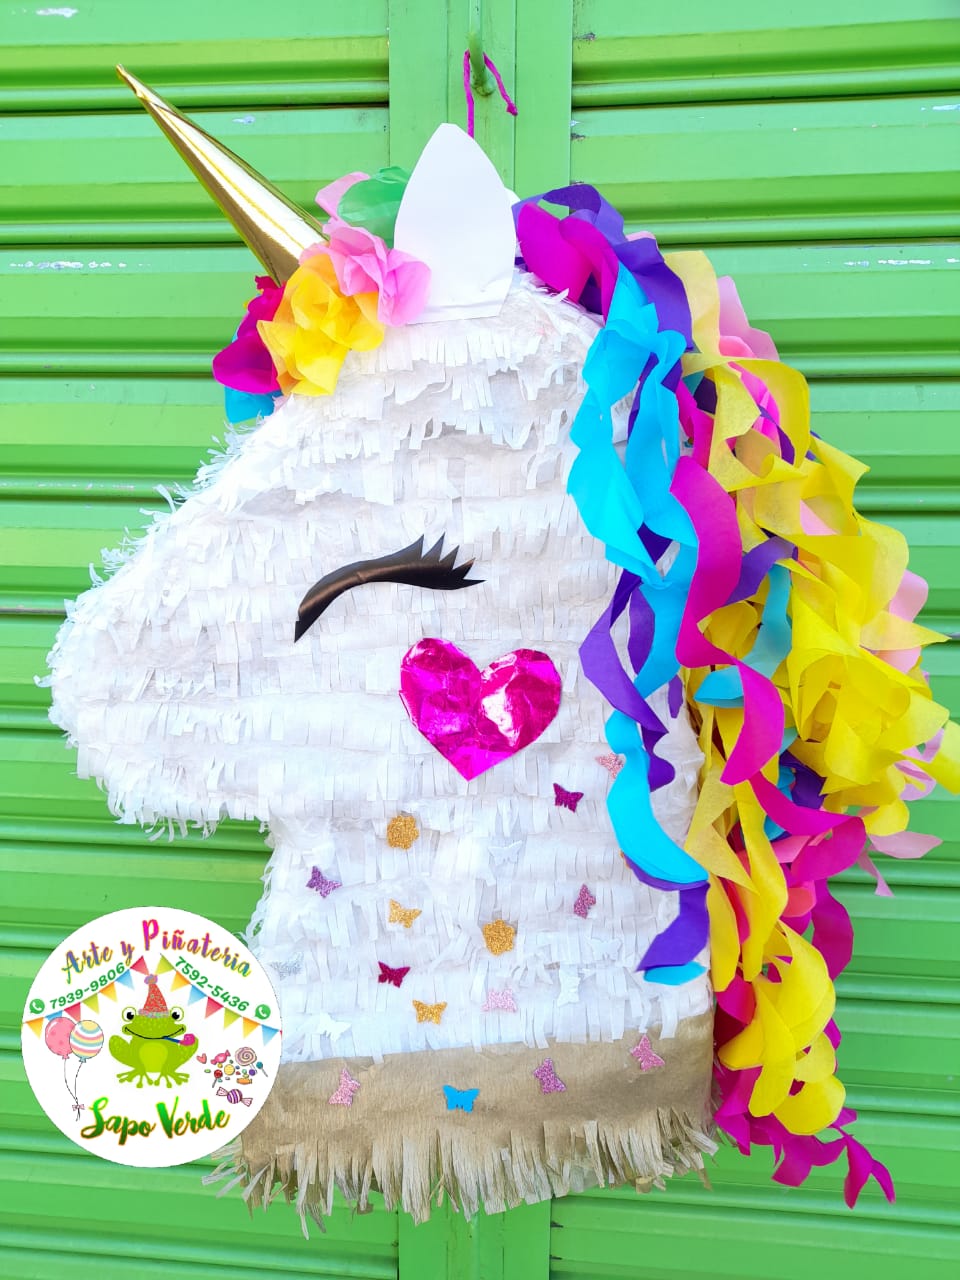 Arte y Piñateria Sapo Verde on X: Piñata 🎉 Unicornio 🦄 #piñata #unicornio  #manualidades #artesanias #sapoverde  / X